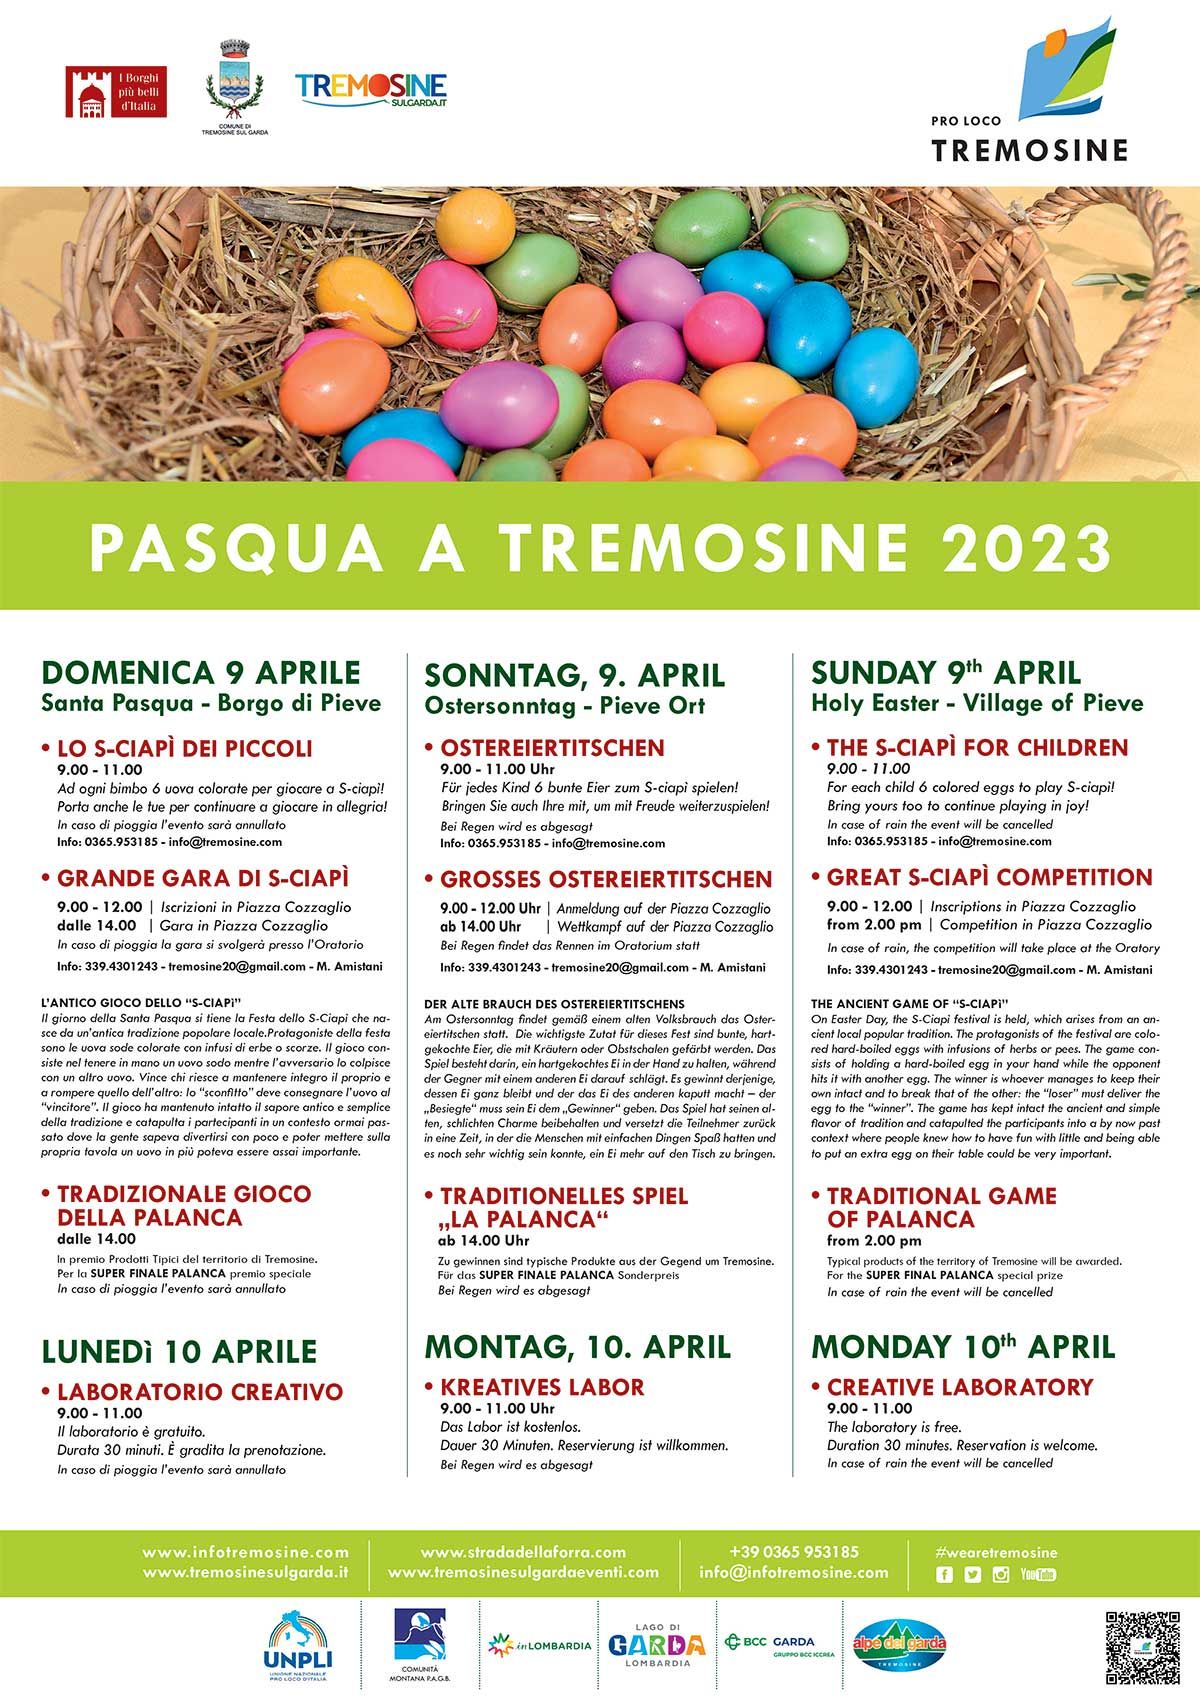 Tremosine-pasqua-2023